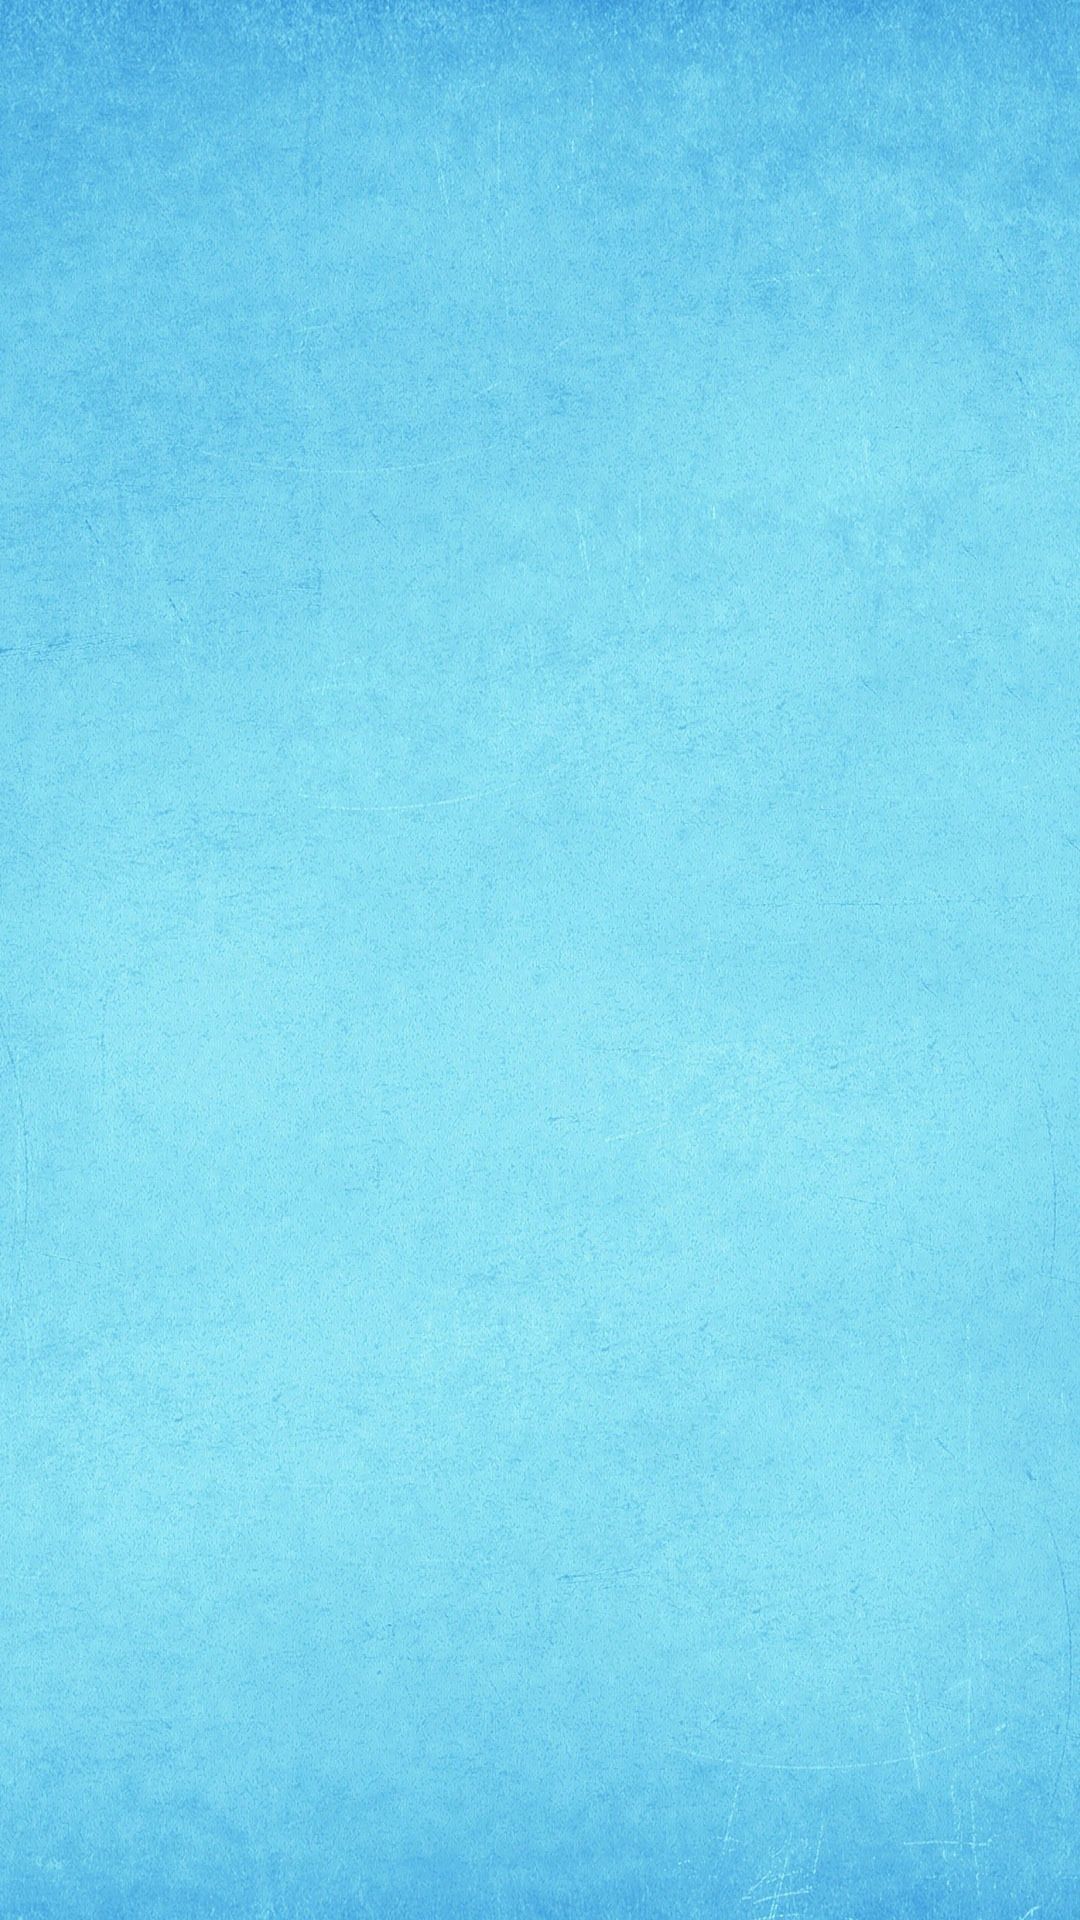 1080x1920 Light blue texture Mobile Wallpaper 6482